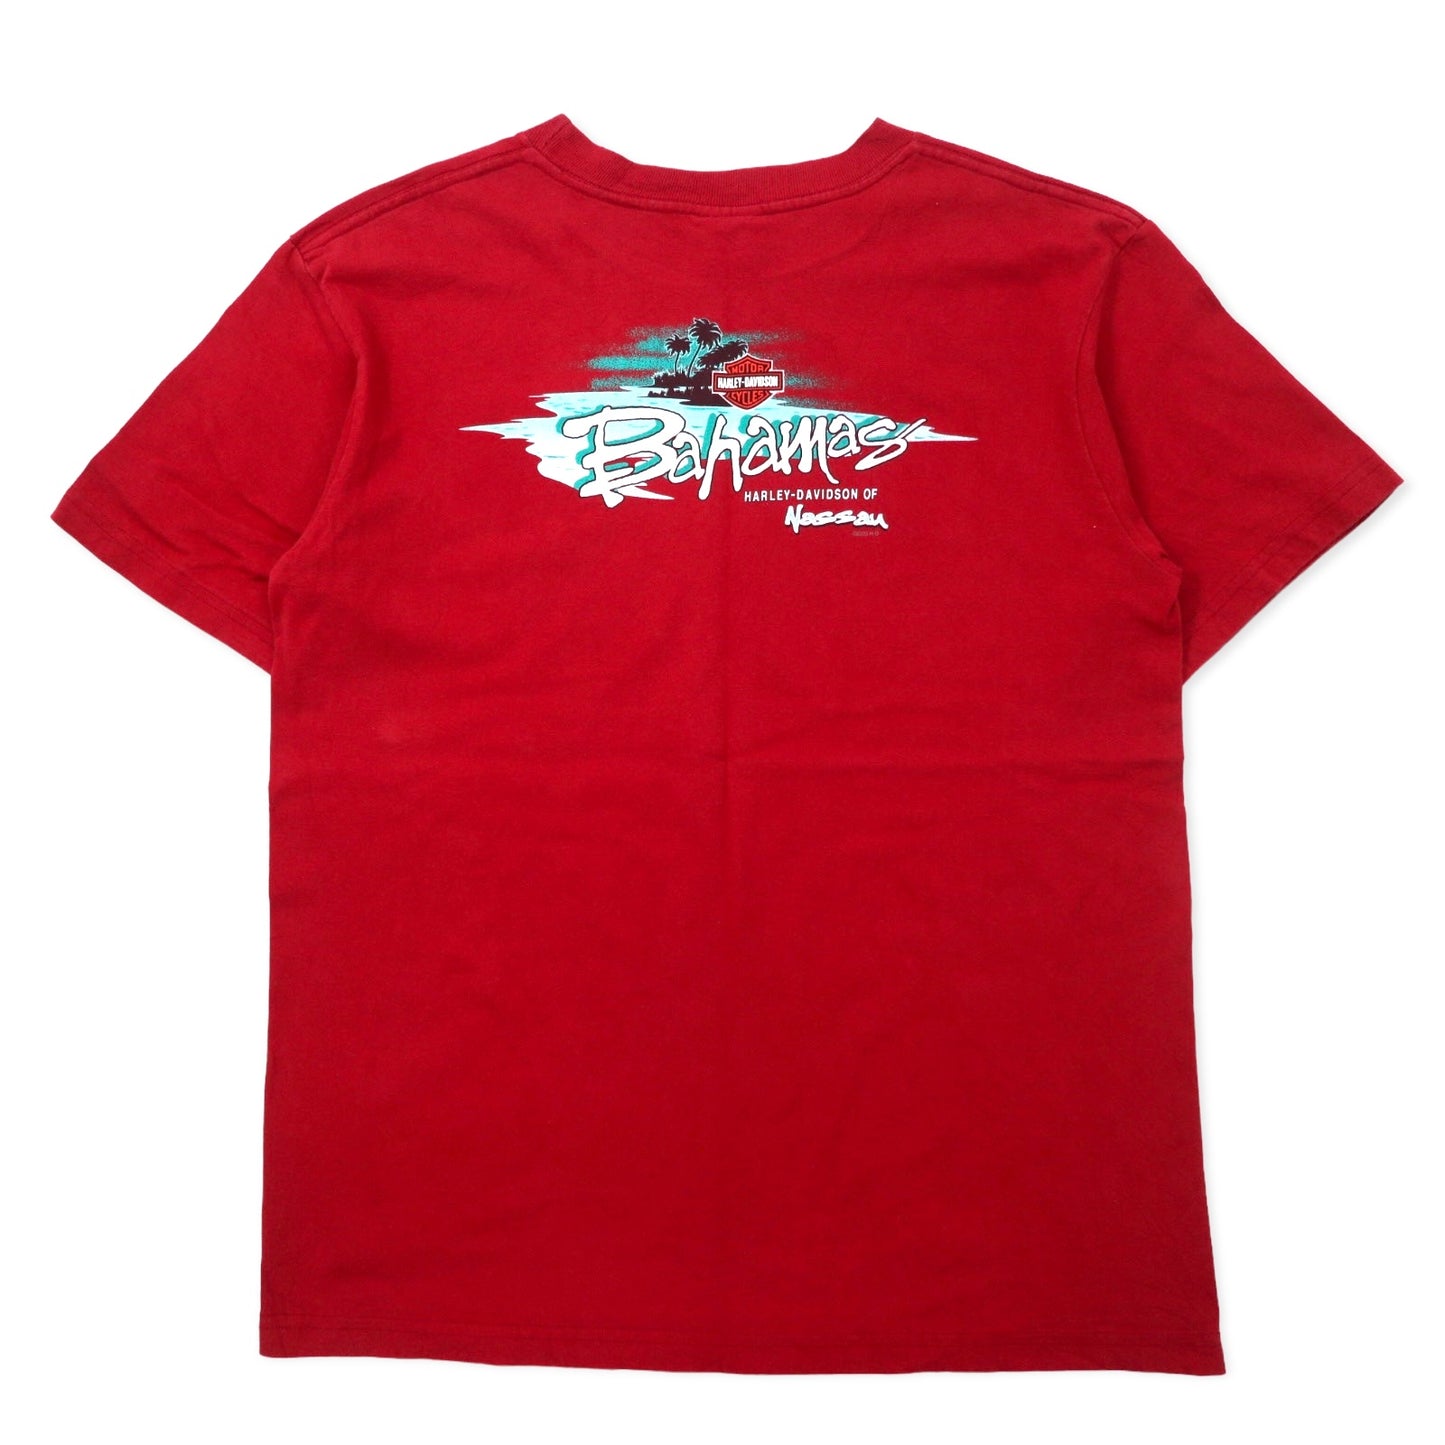 HARLEY DAVIDSON USA製 ロゴプリント Tシャツ L レッド コットン Bahamas